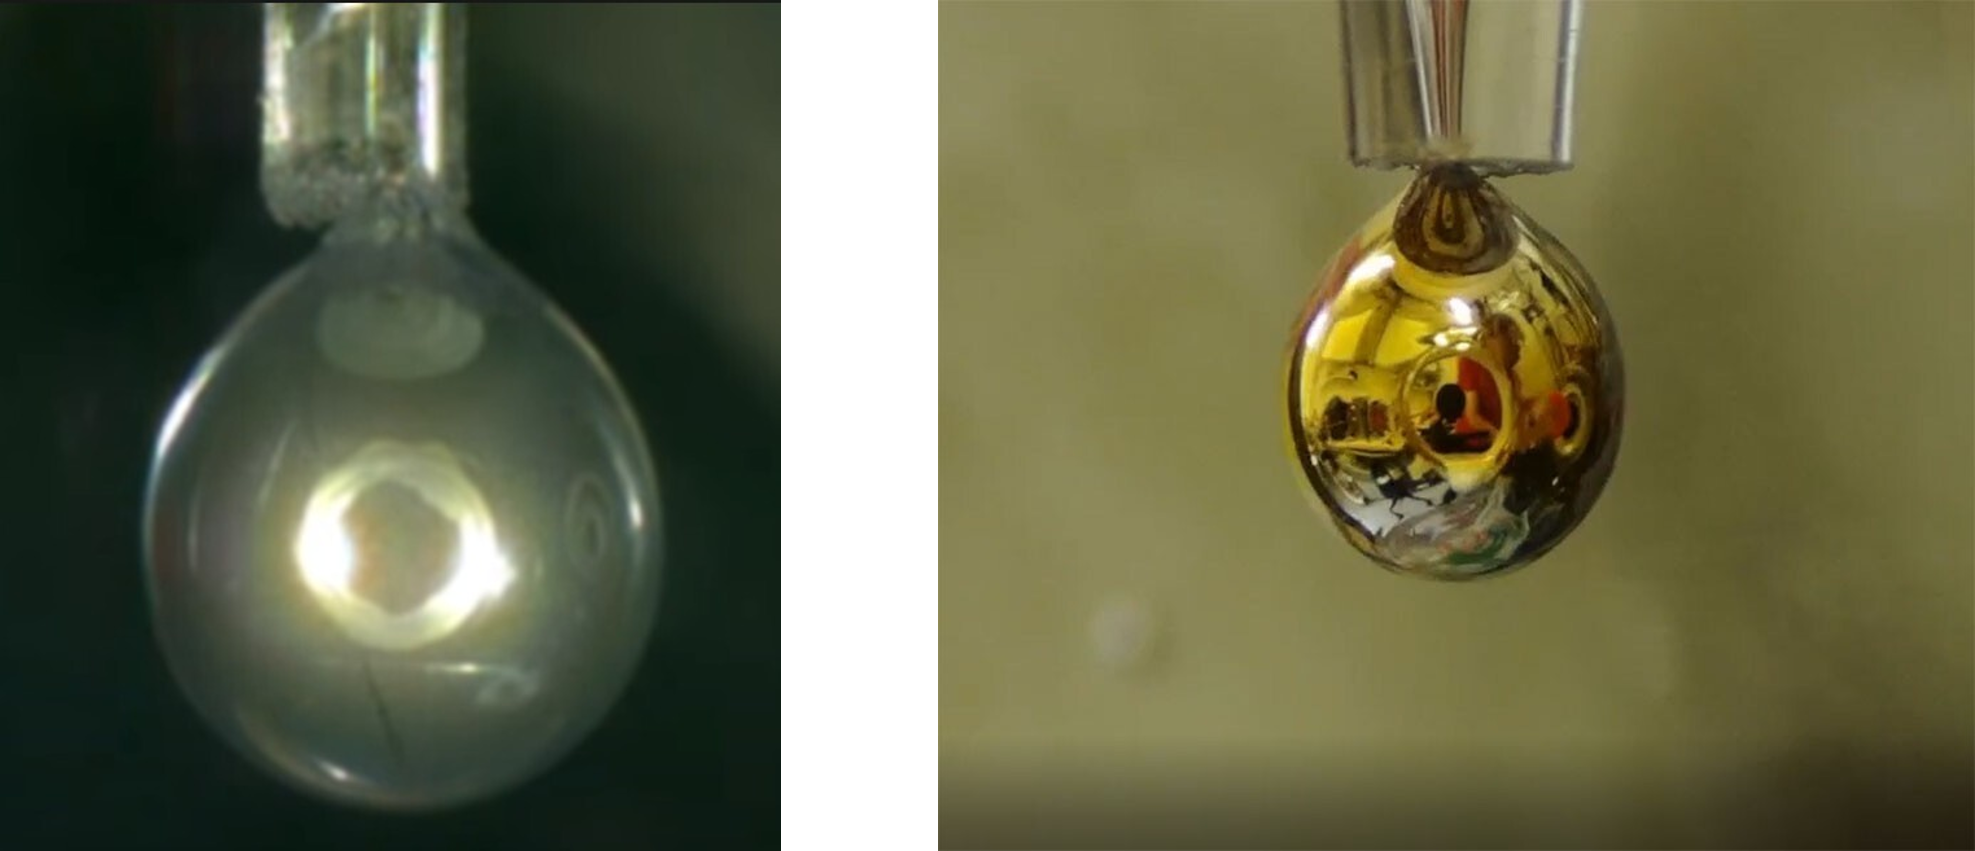 (좌) 수증기에 노출되기 전의 NaK 방울입니다. (우) 금속 물방울입니다. 두 이미지 모두 유튜브 영상을 캡처했습니다.